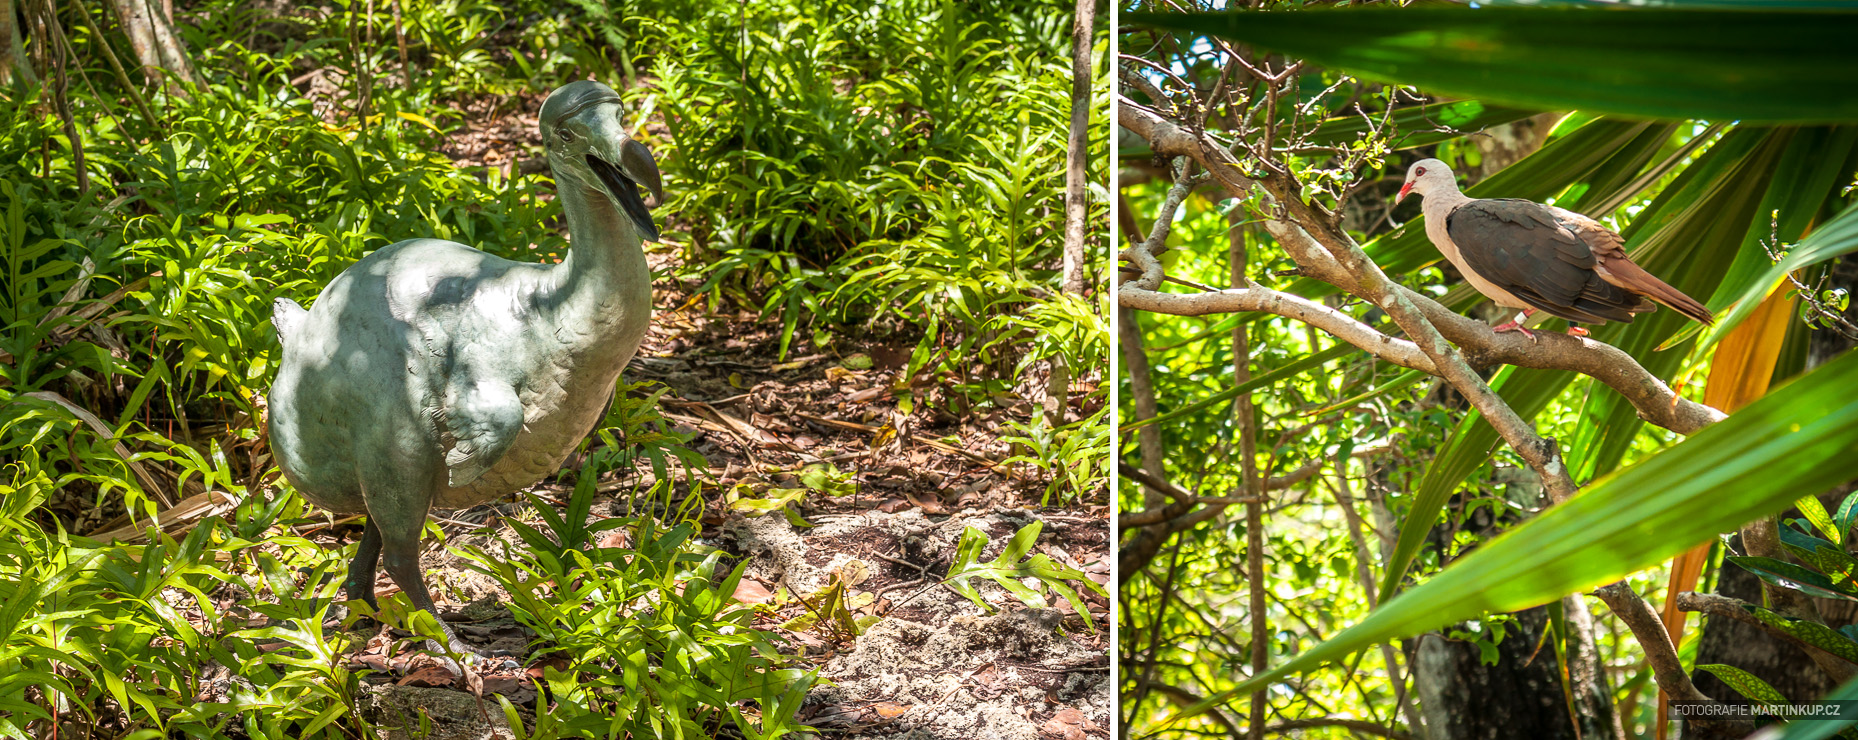 Socha ptáka Dodo (Blboun nejapný) a růžový holub napravo (Mauritius)